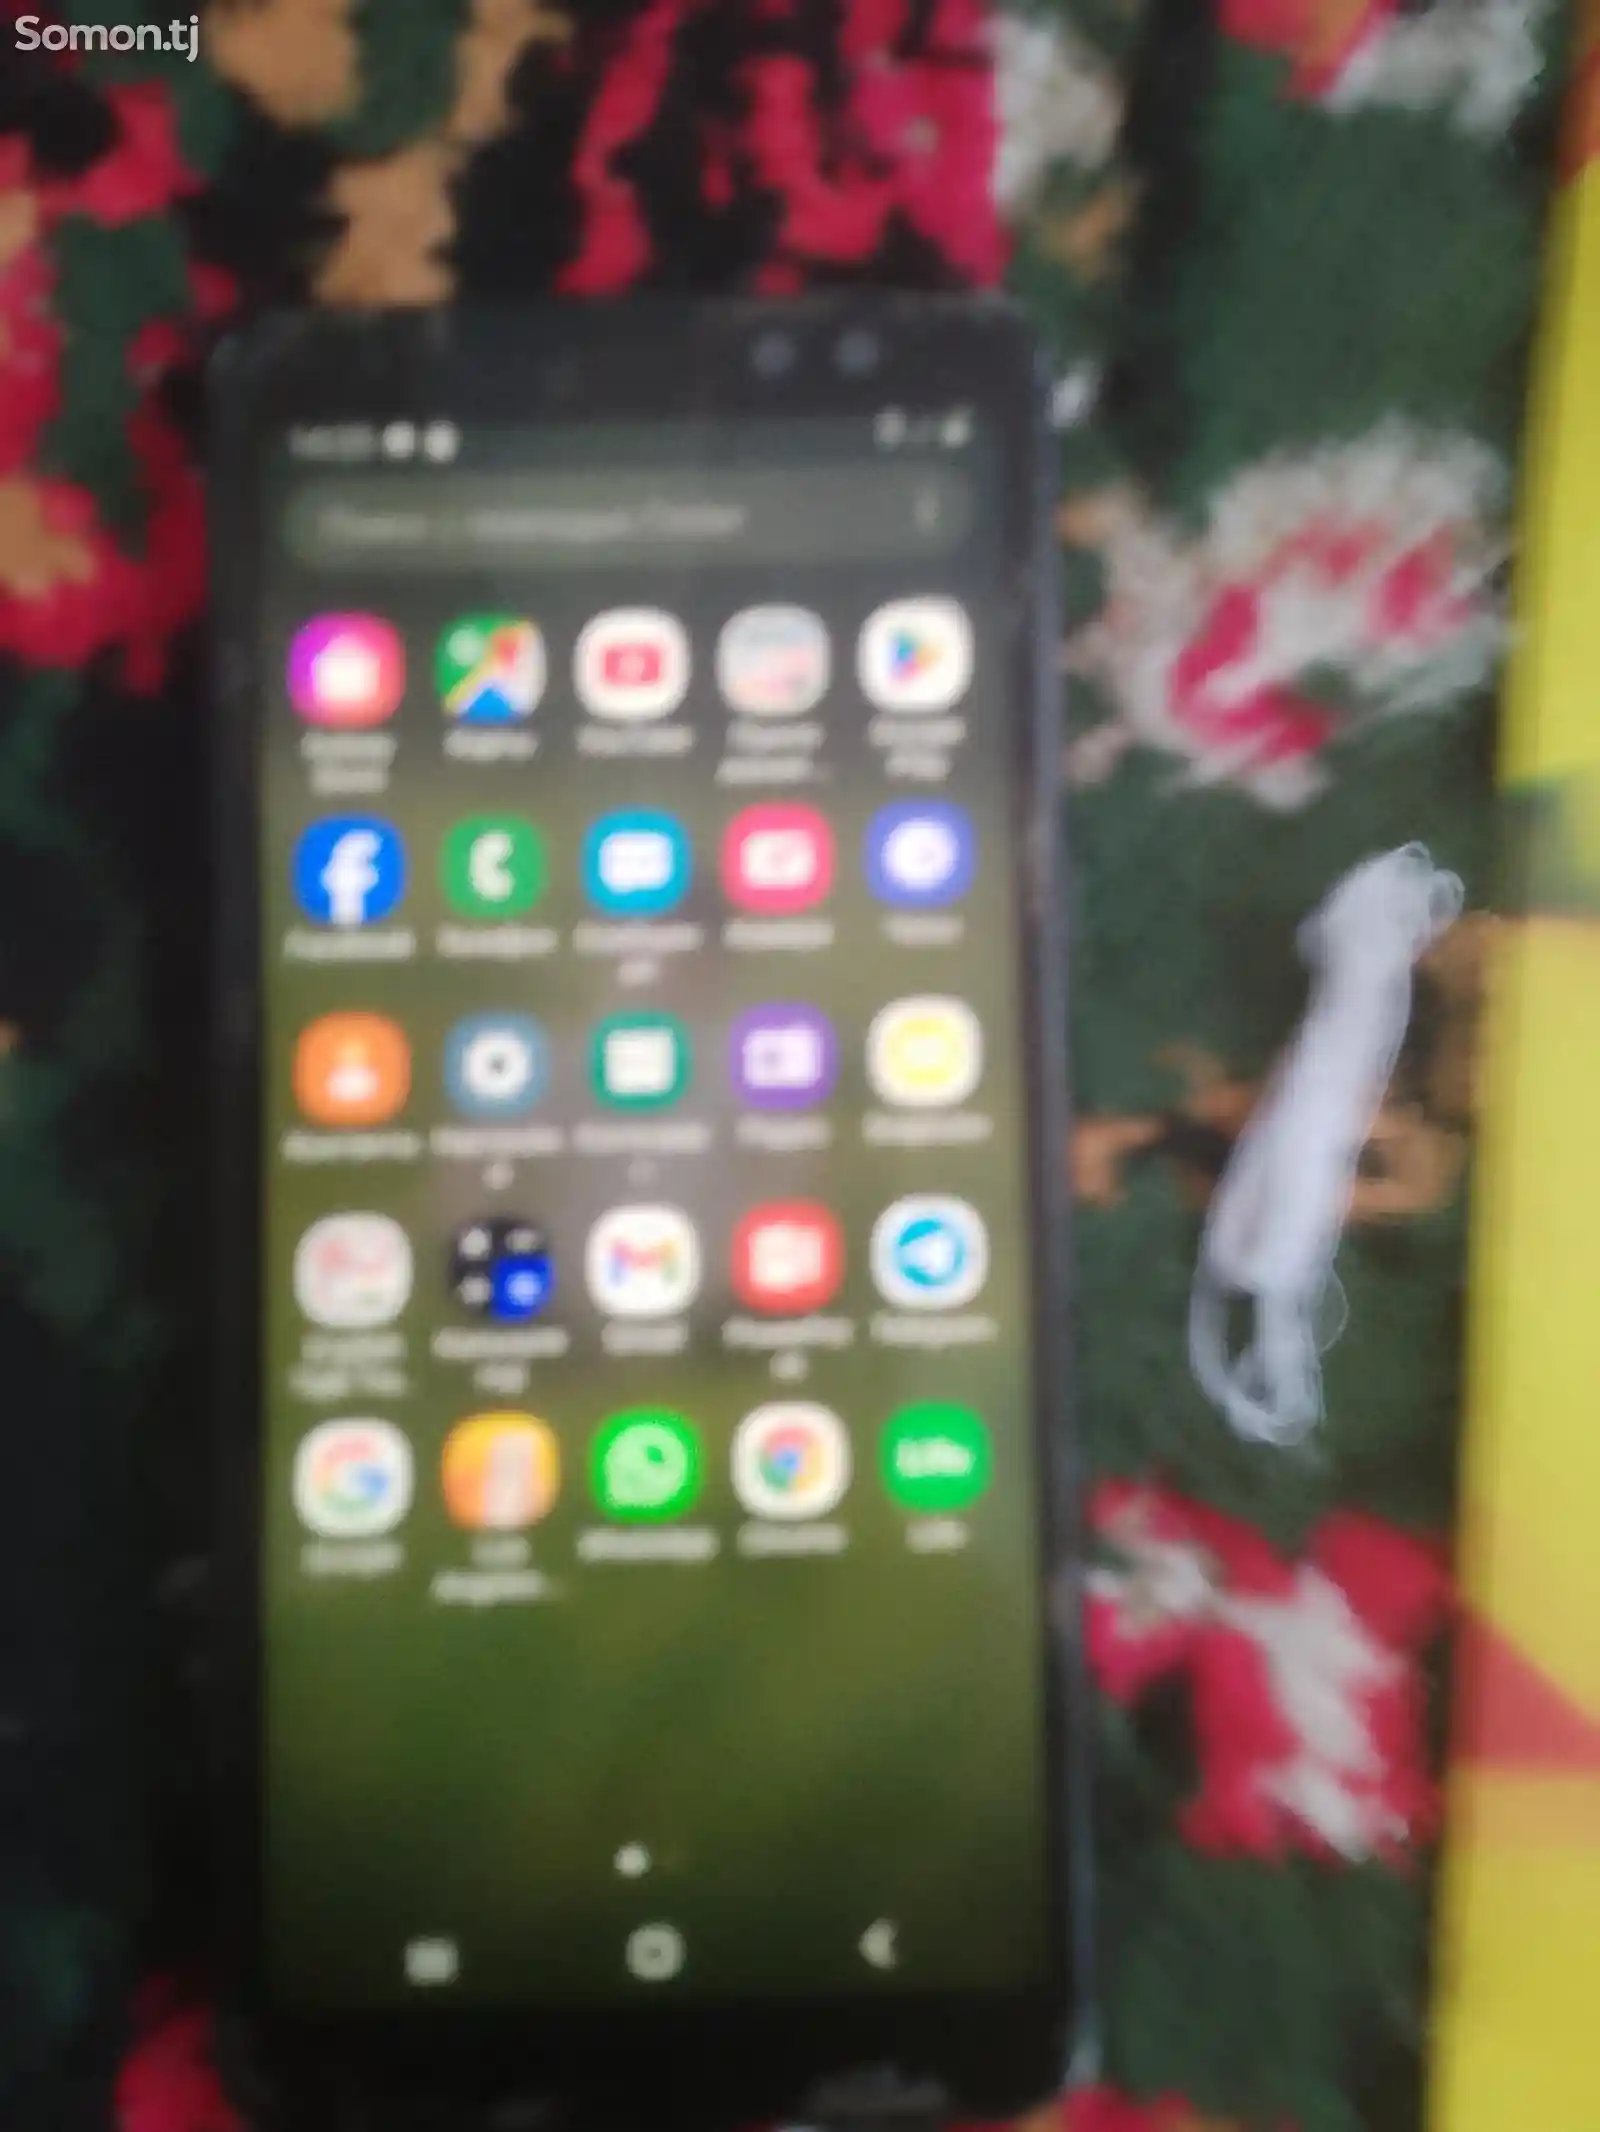 Samsung Galaxy A8-2